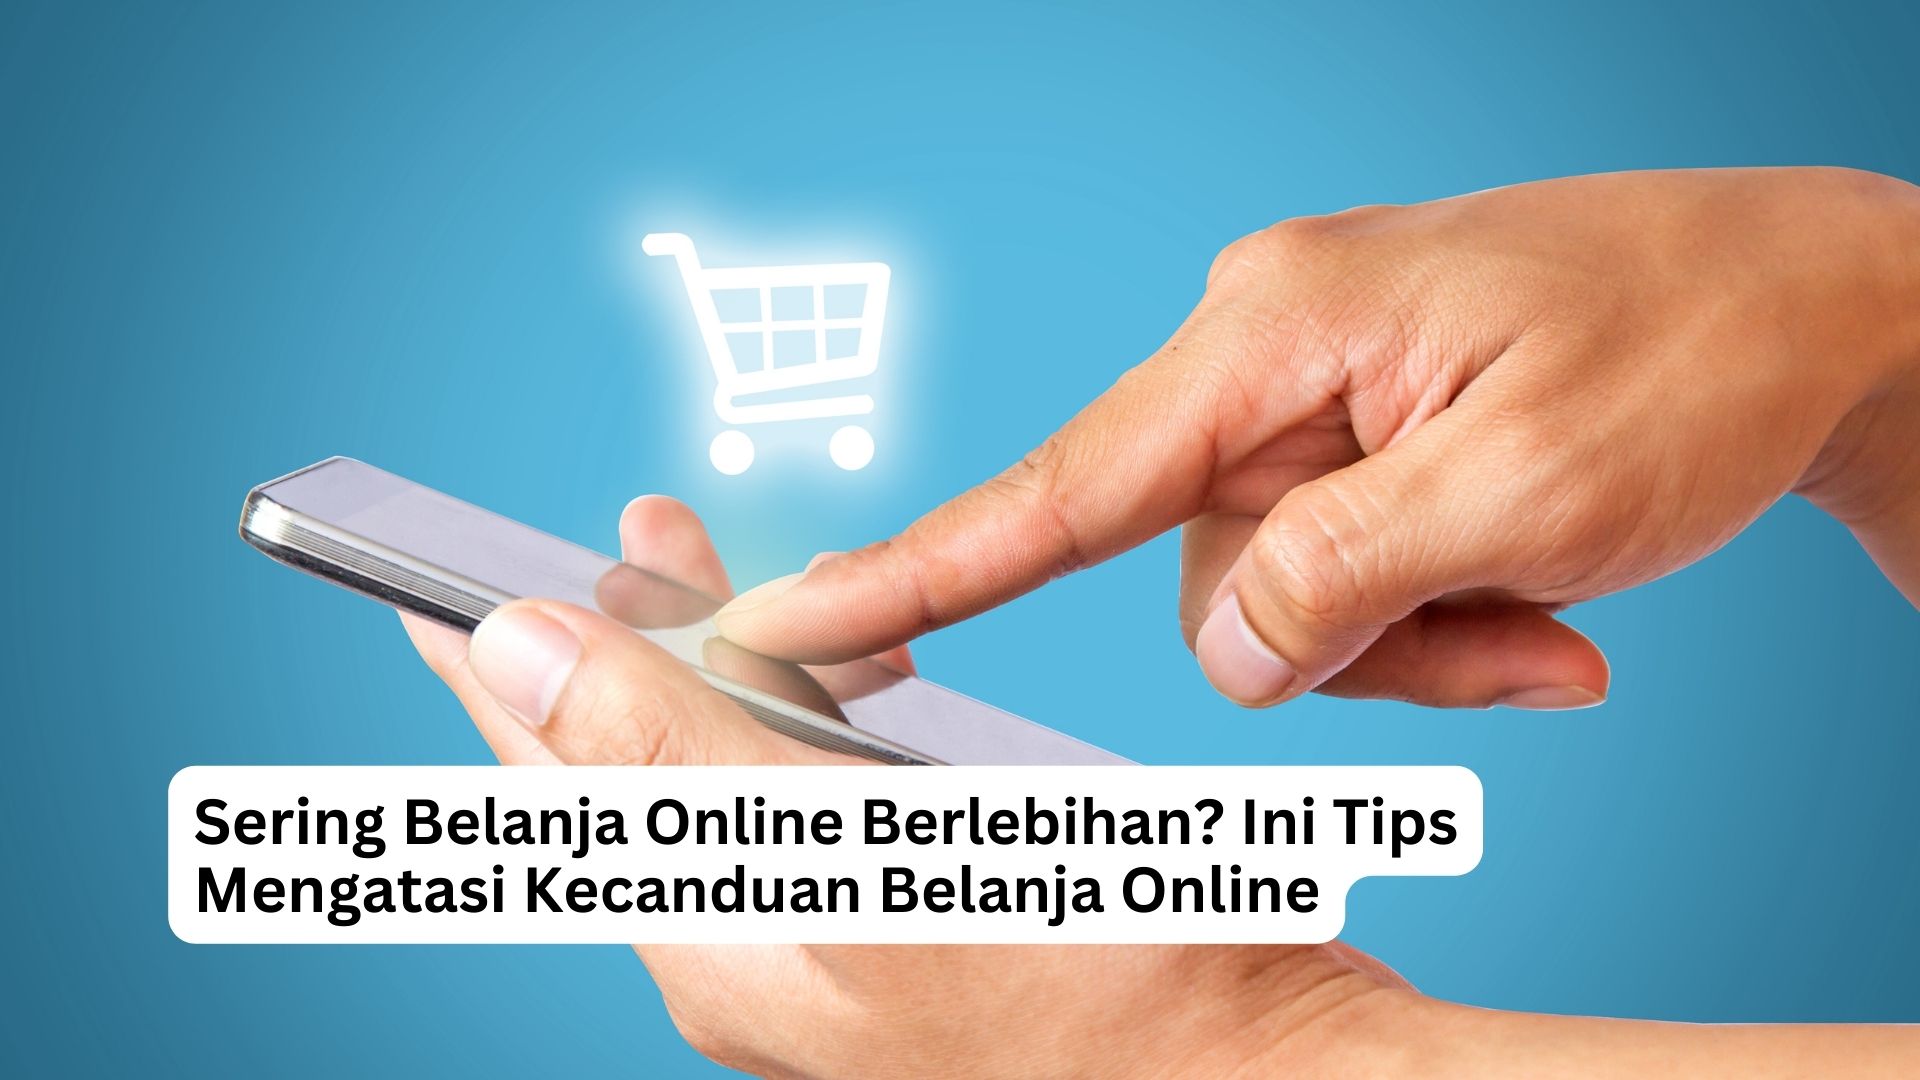 You are currently viewing Sering Belanja Online Berlebihan? Ini Tips Mengatasi Kecanduan Belanja Online